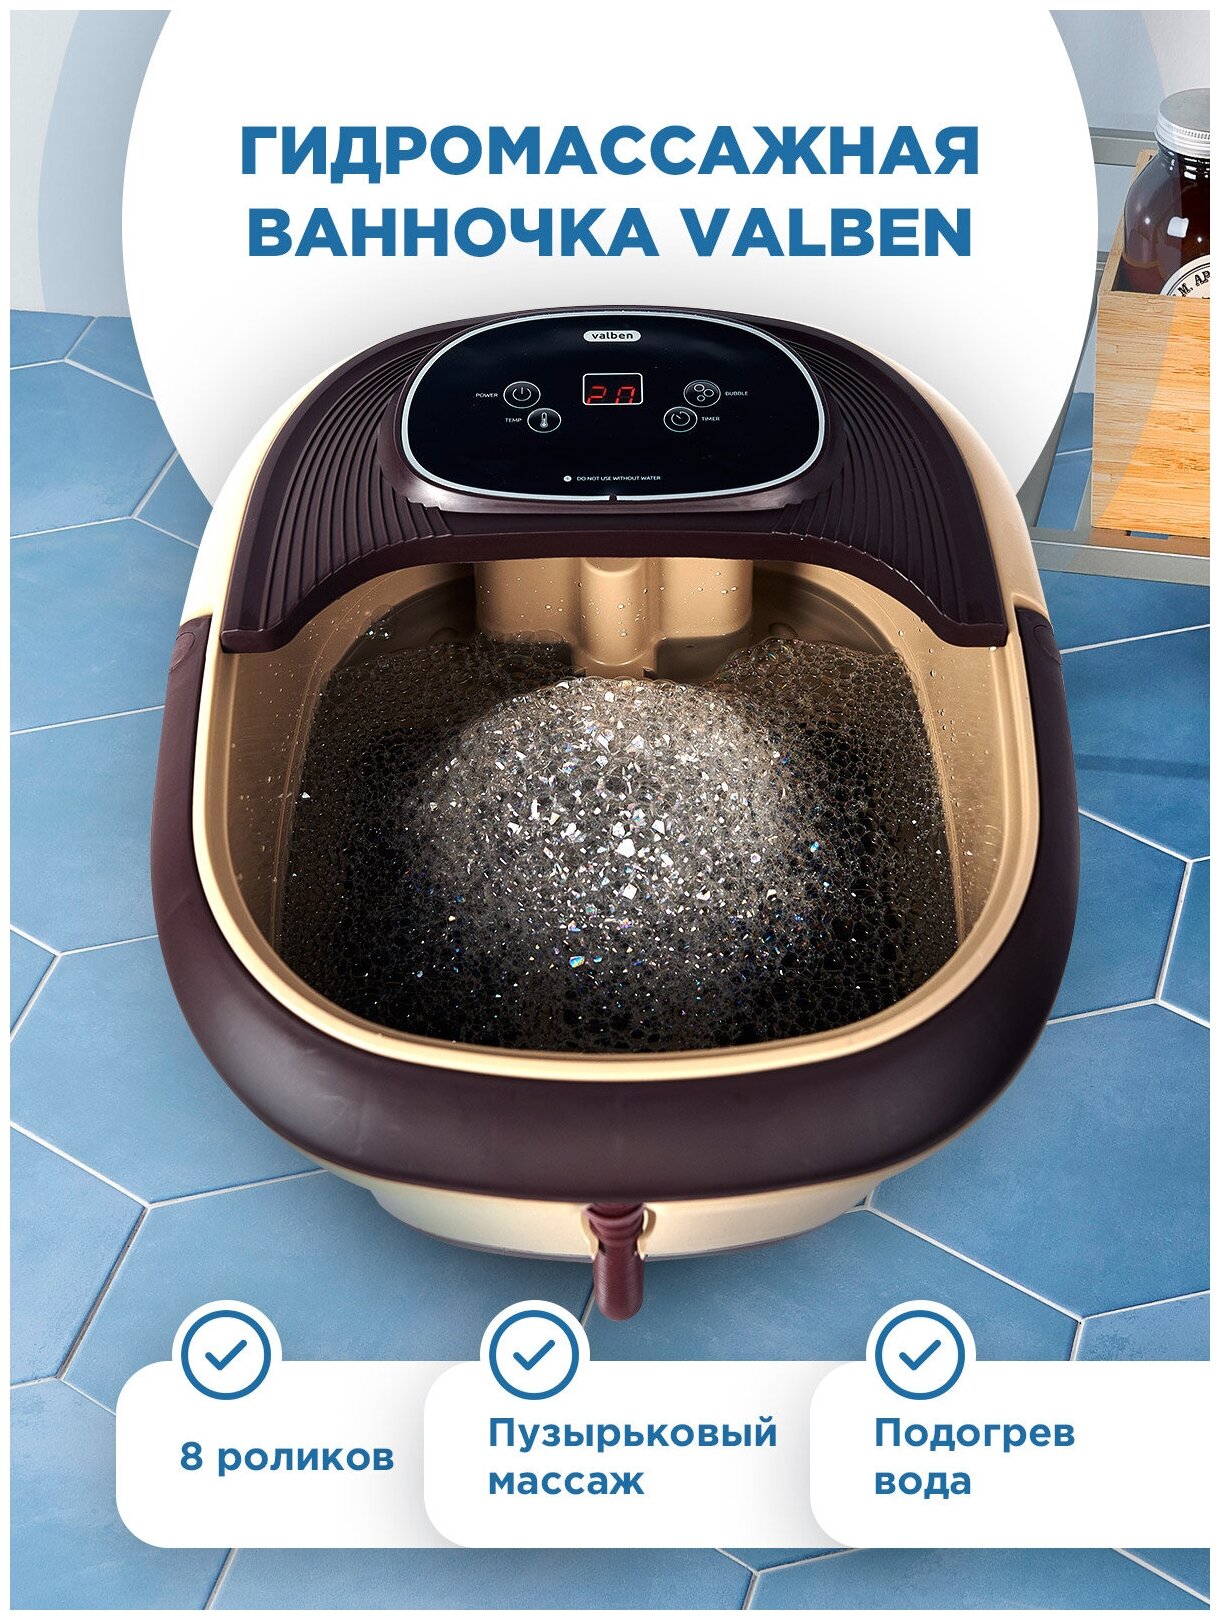 Гидромассажная ванночка для ног с установкой температуры воды, Valben, 8 массажных роликов